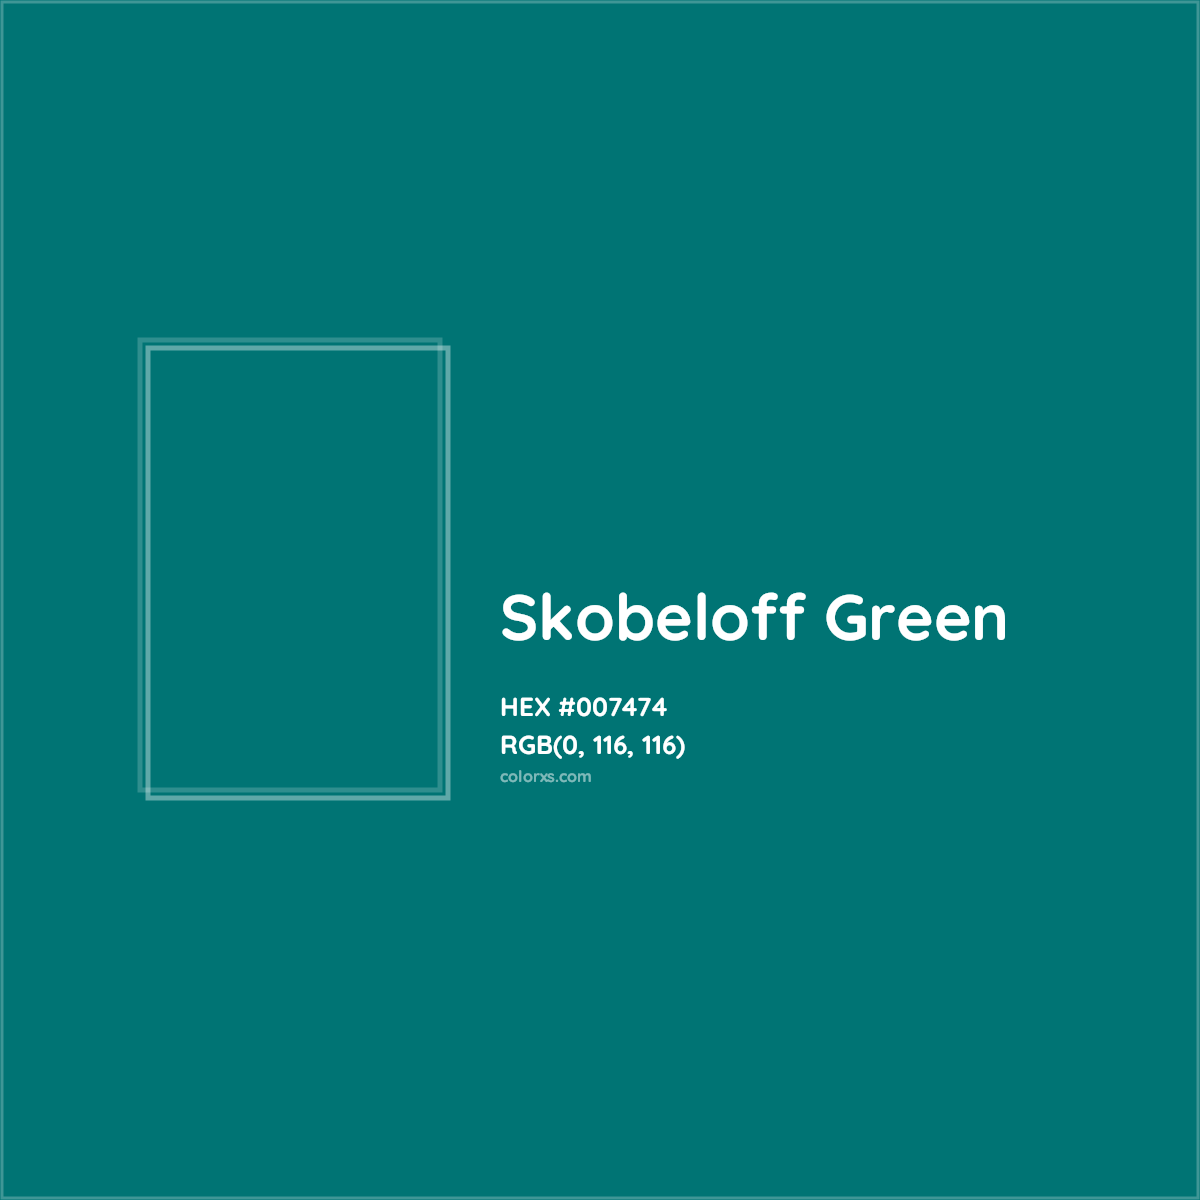 HEX #007474 Skobeloff Green Color - Color Code